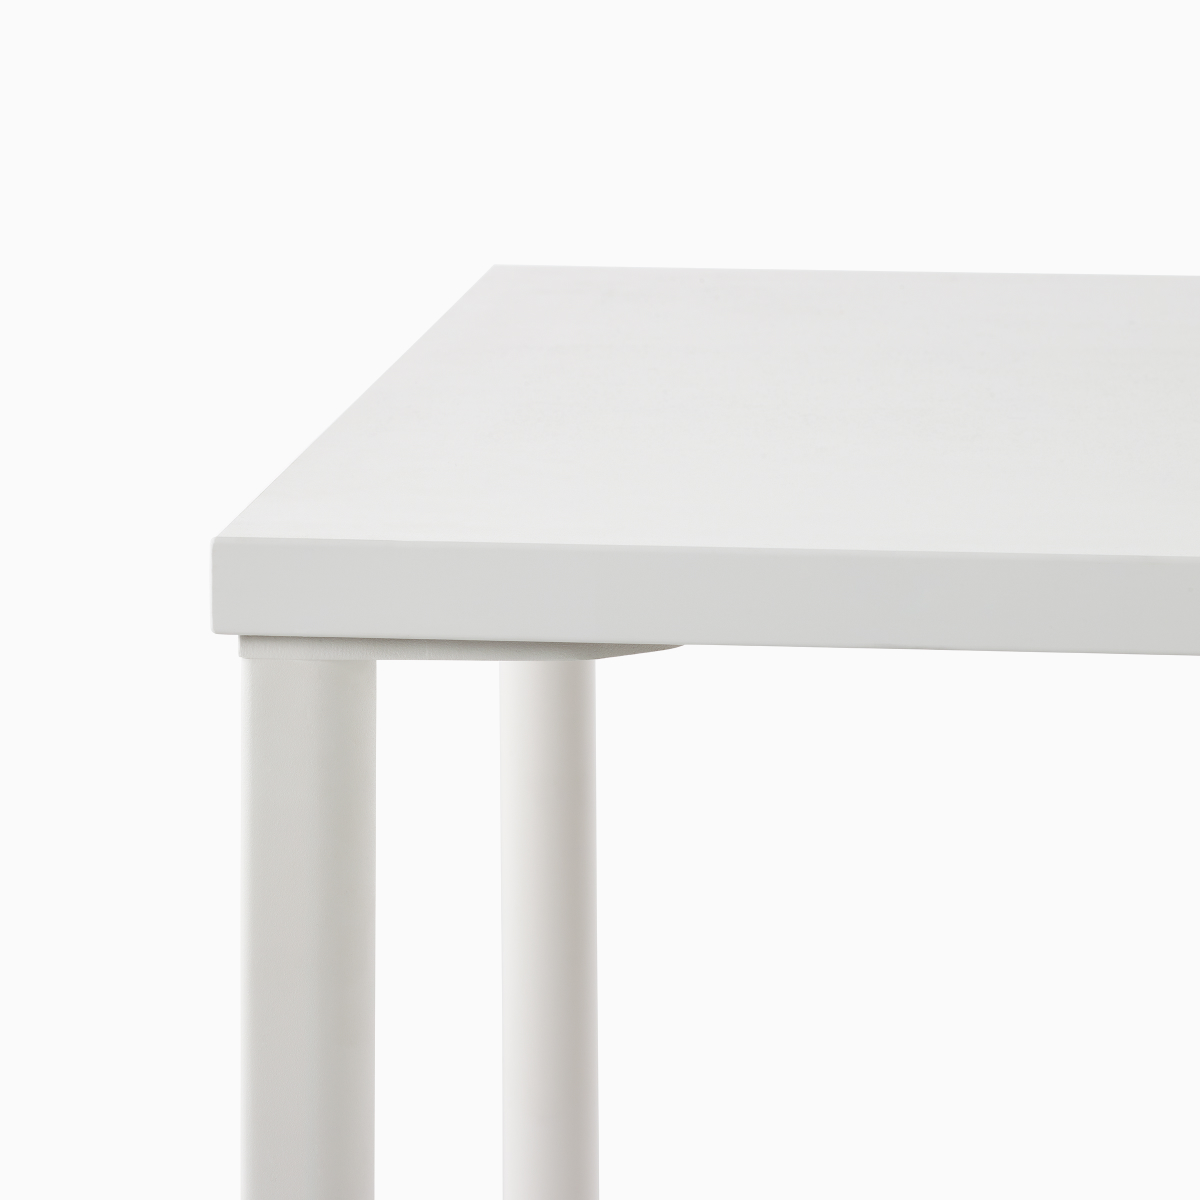 Primer plano del detalle de la pata de una mesa rectangular OE1 con superficie en blanco y patas en blanco.